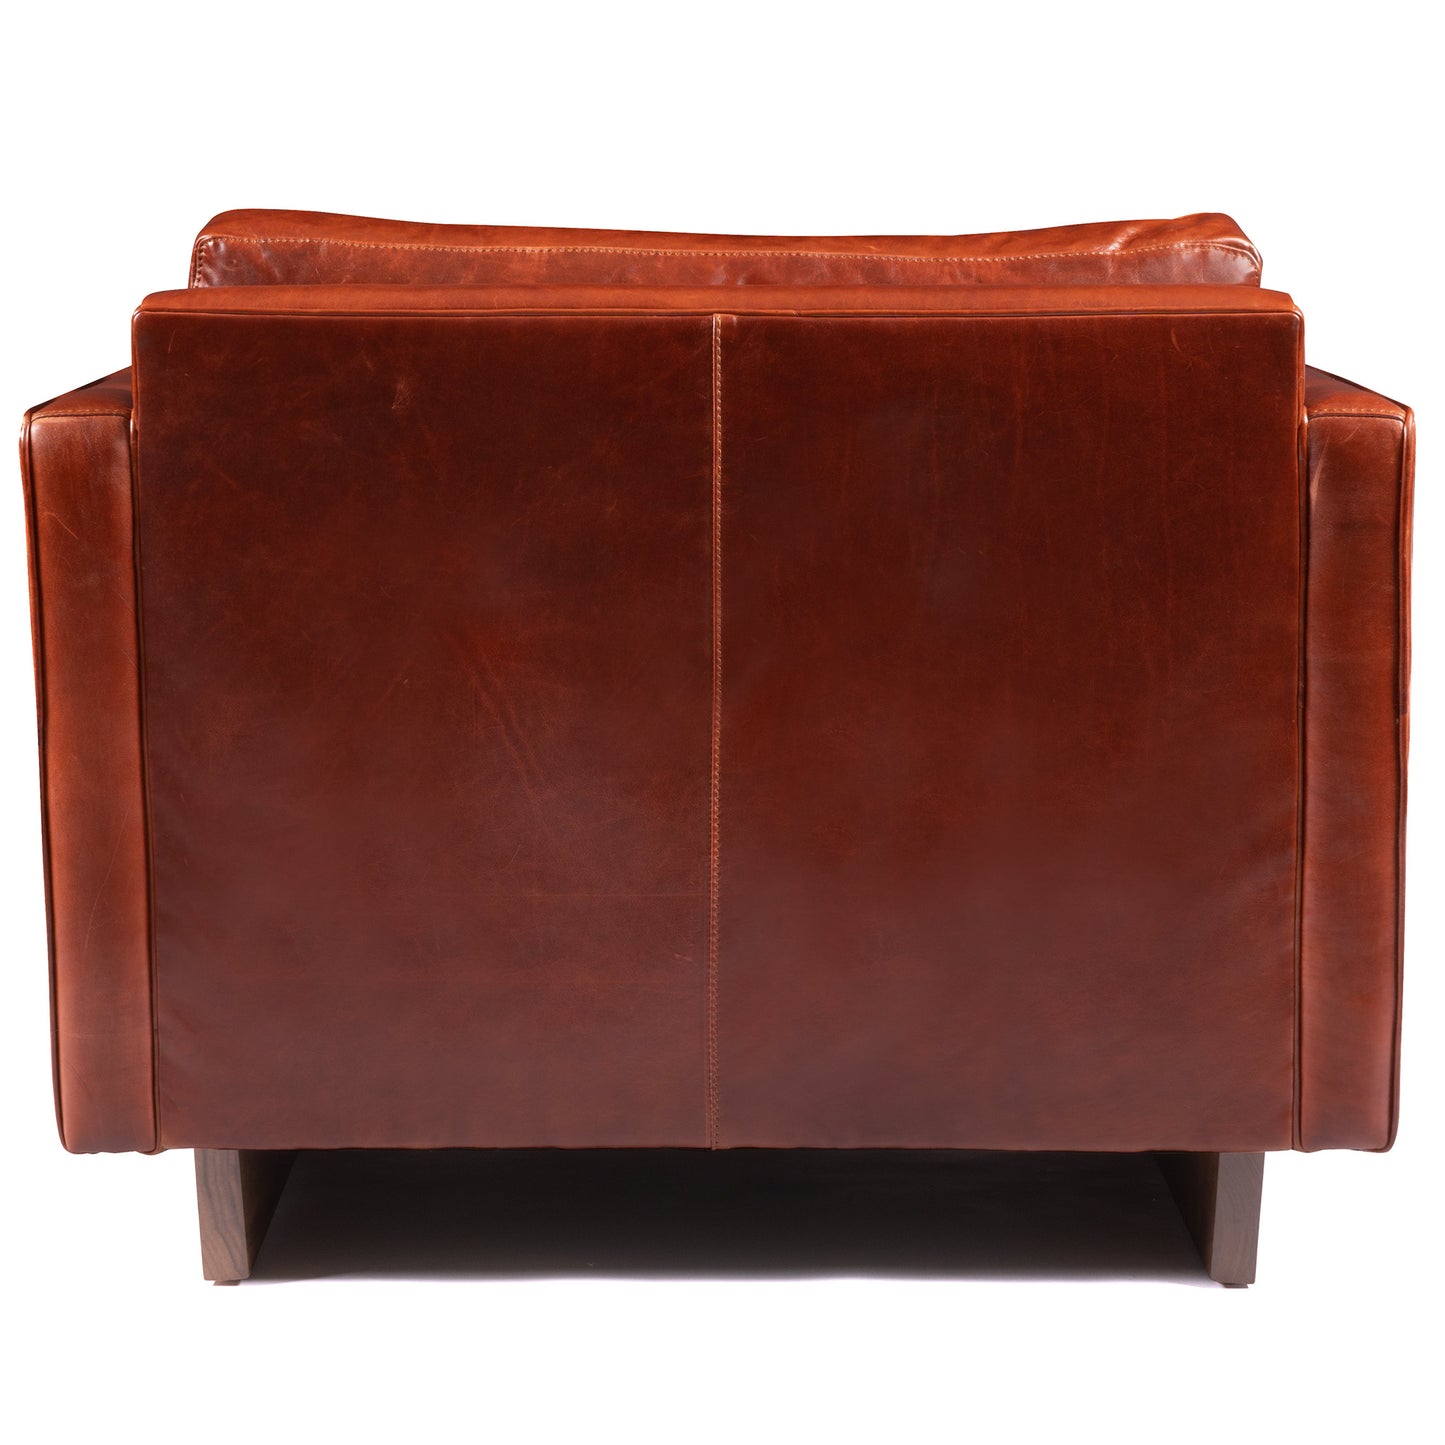 Paxton Chair - Stickley Furniture | Mattress